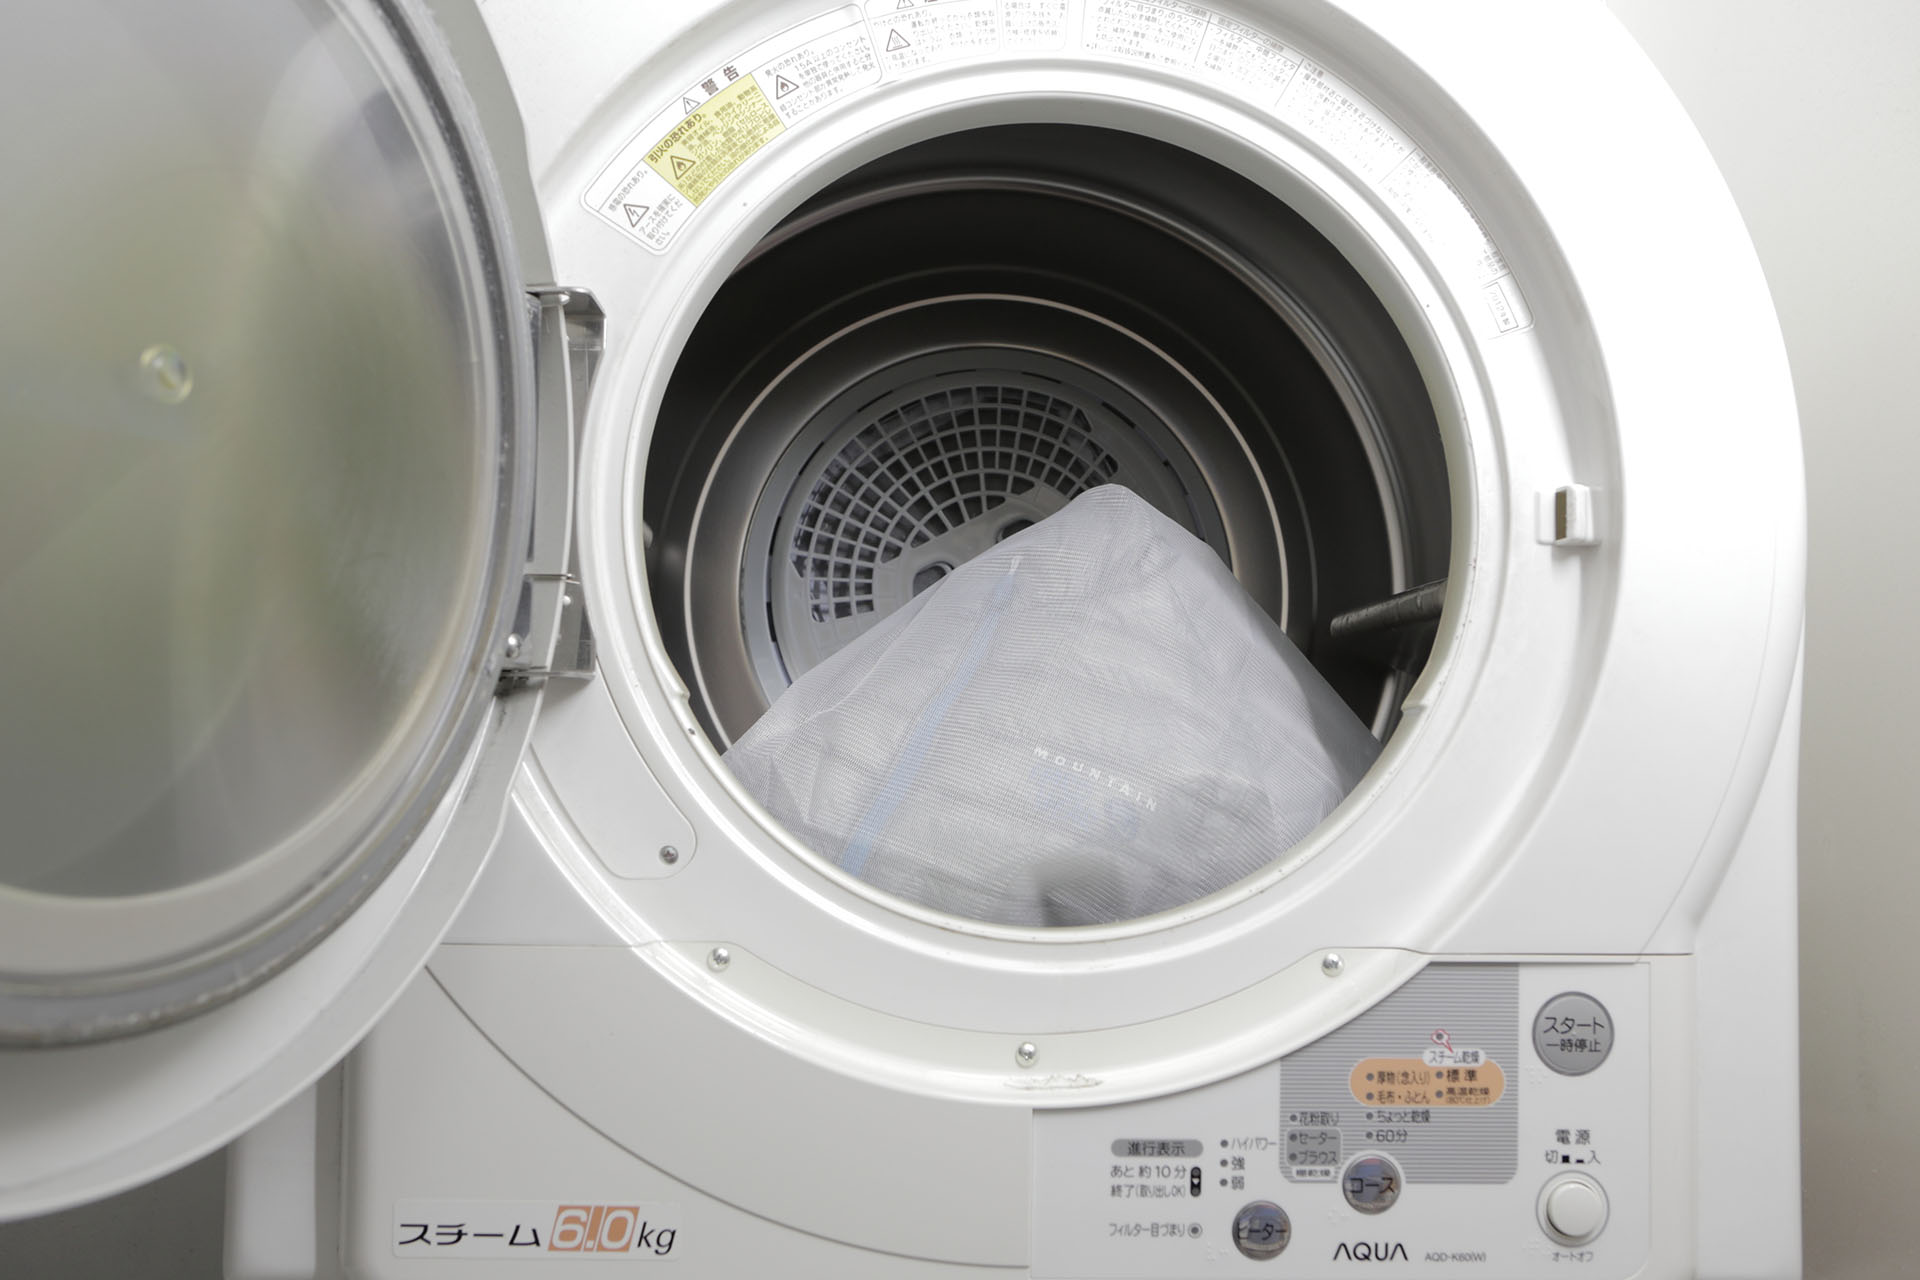 A-COL-2-10 【冬物・お手入れ方法】ダウンやフリースを自宅で洗濯、乾燥する際の失敗しないコツ